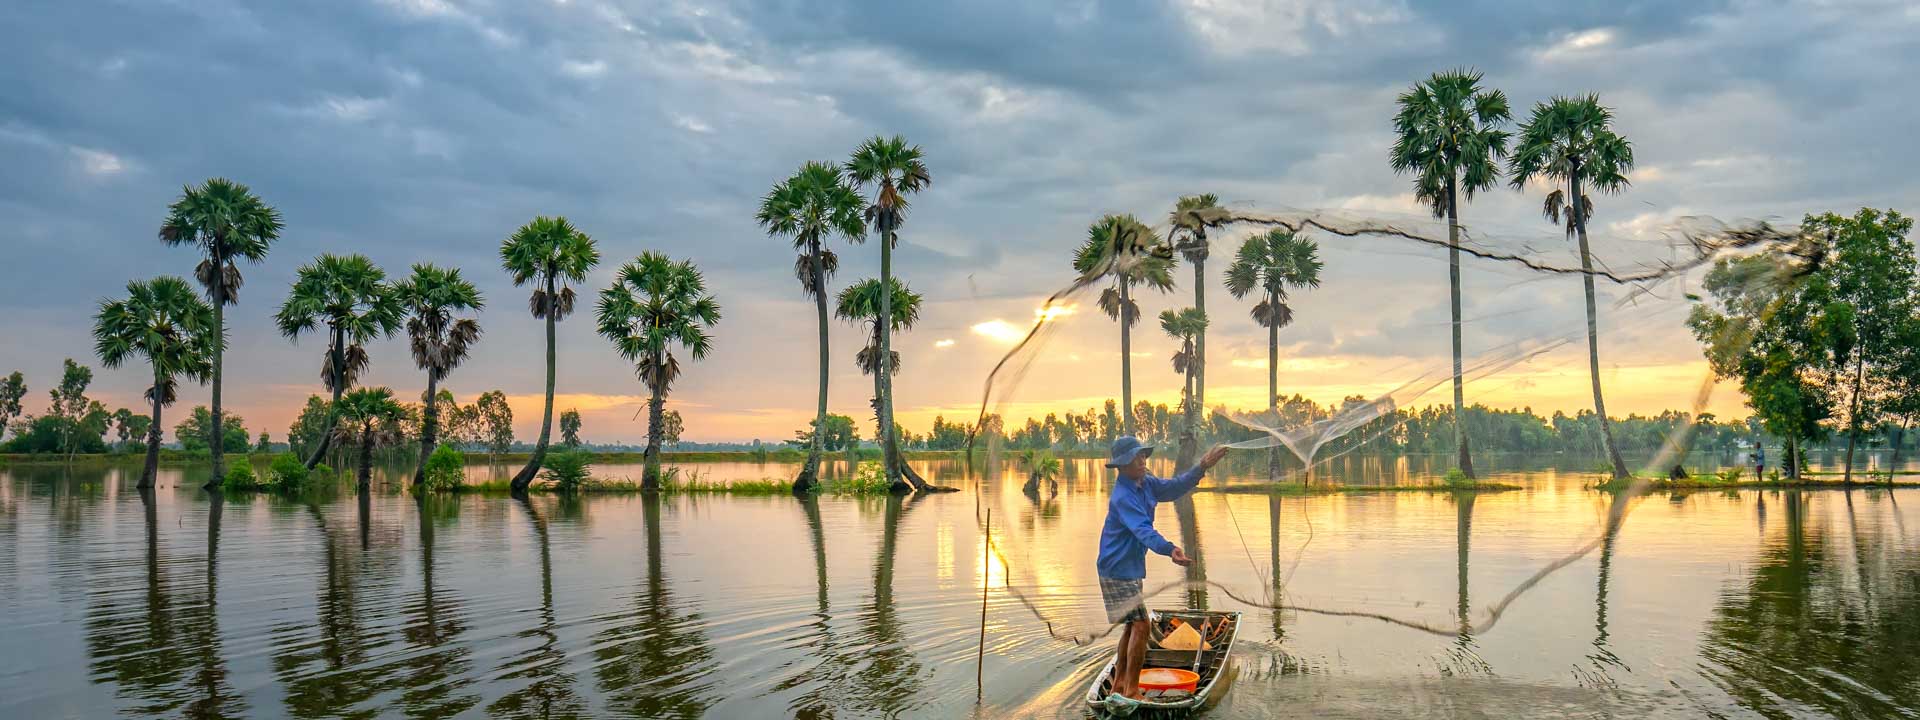 Adventure Vietnam Cambodia Laos Tour 3 weeks